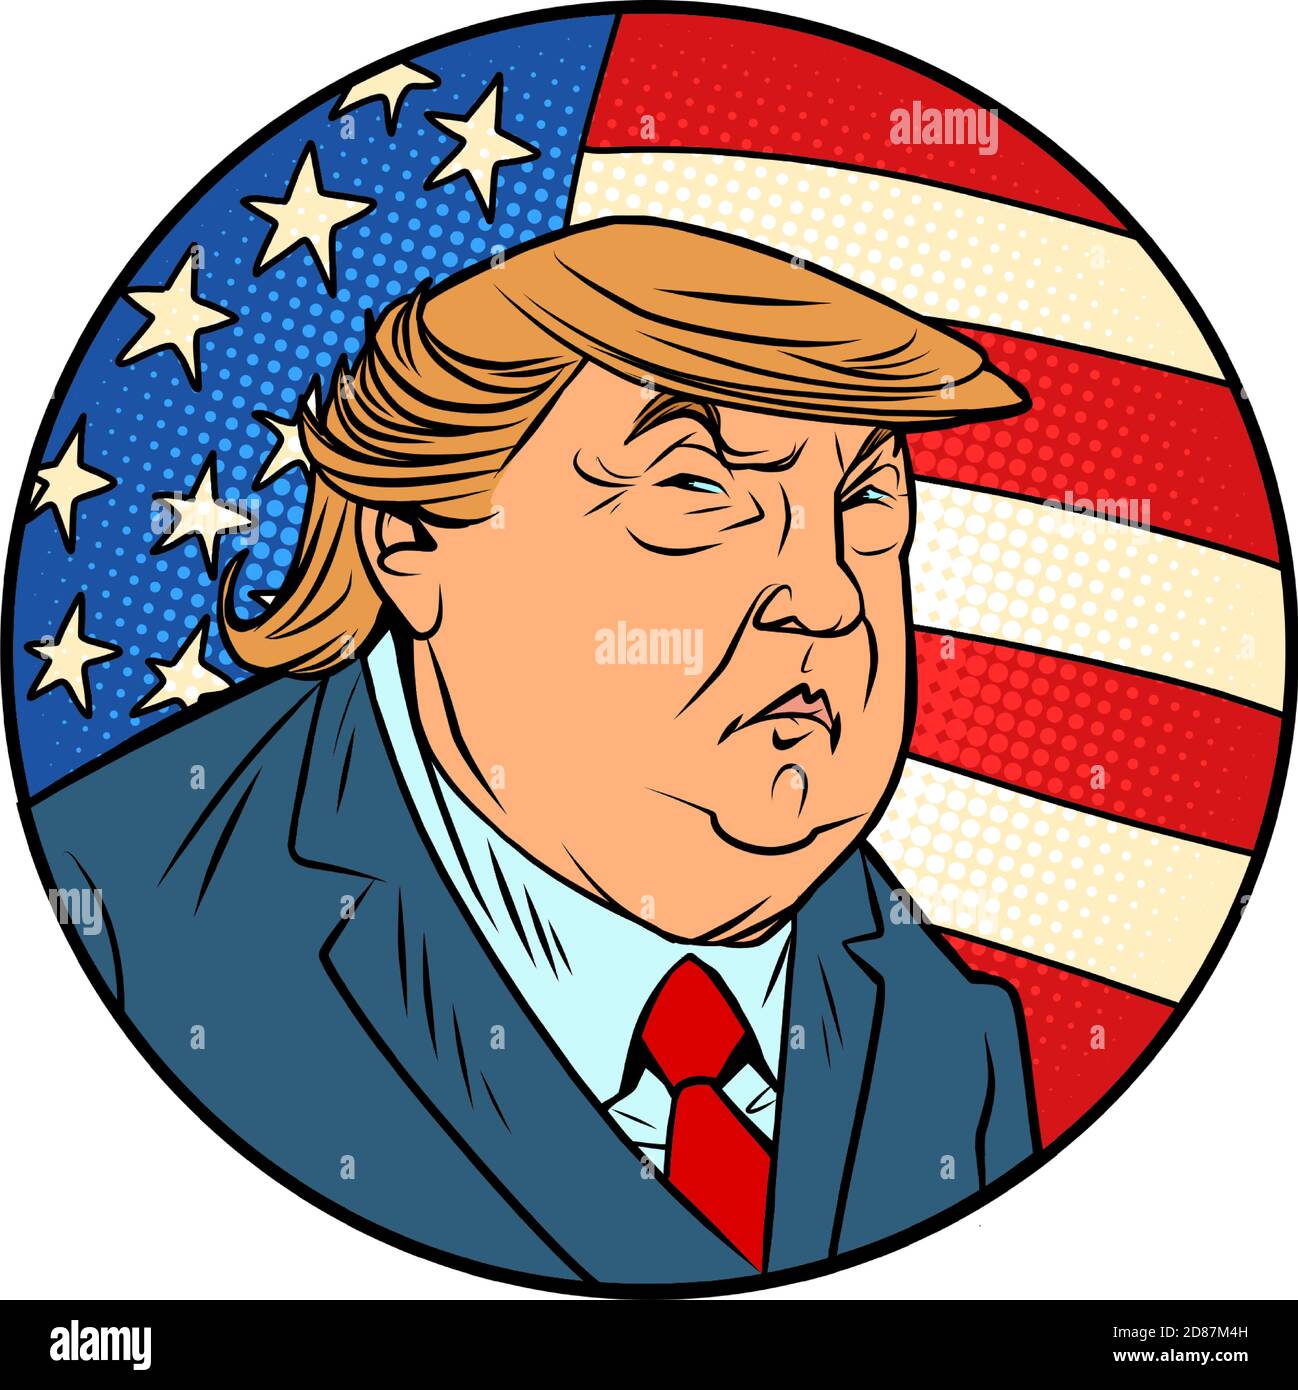 Donald Trump el 45 presidente de los Estados Unidos, un hombre de negocios y personalidad televisiva Ilustración del Vector